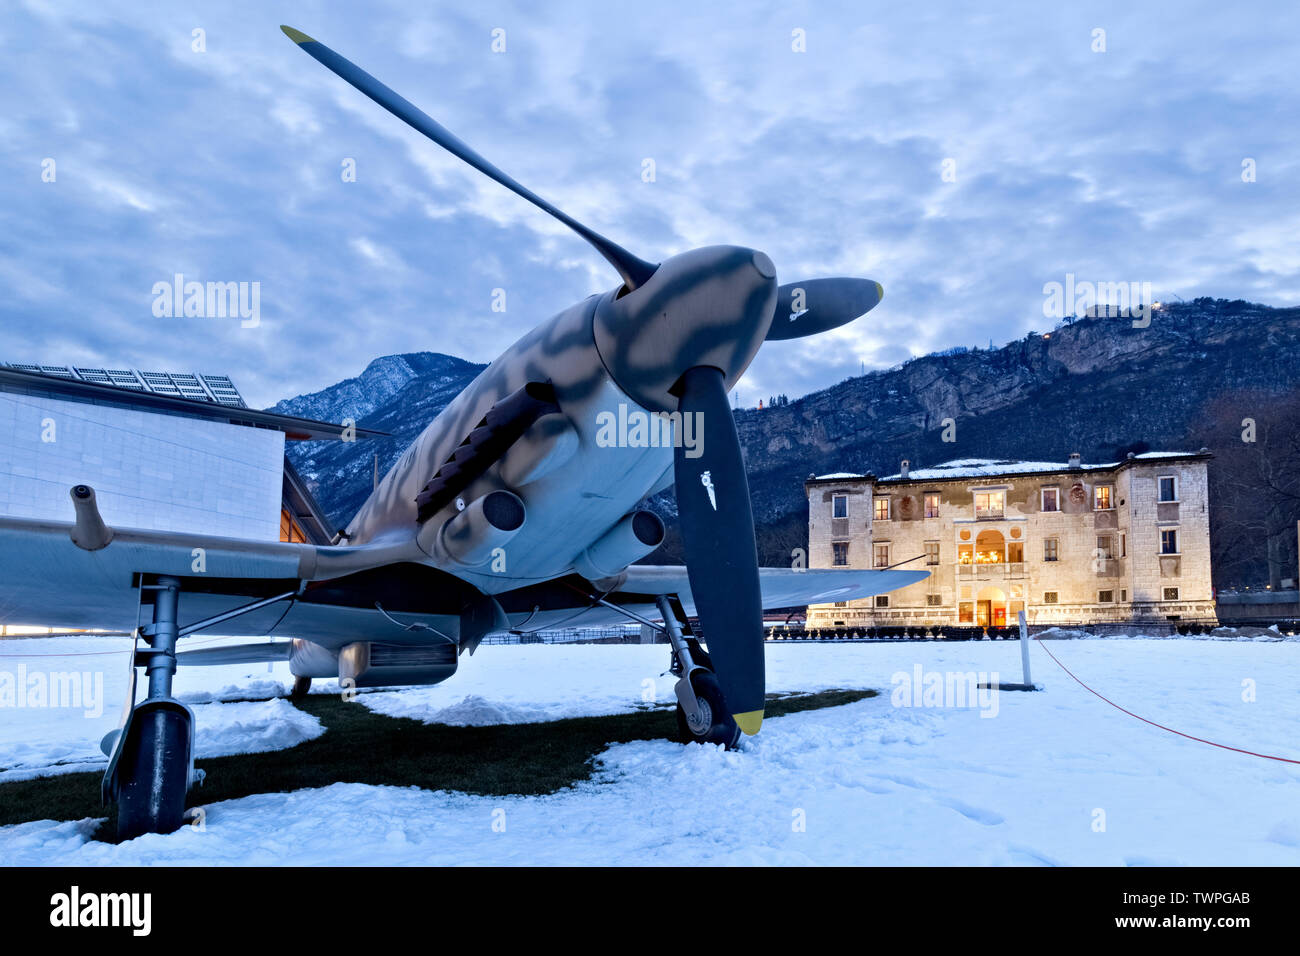 L'Aermacchi 205 aereo ed il Palazzo Albere a Trento. Trentino Alto Adige, Italia, Europa. Foto Stock